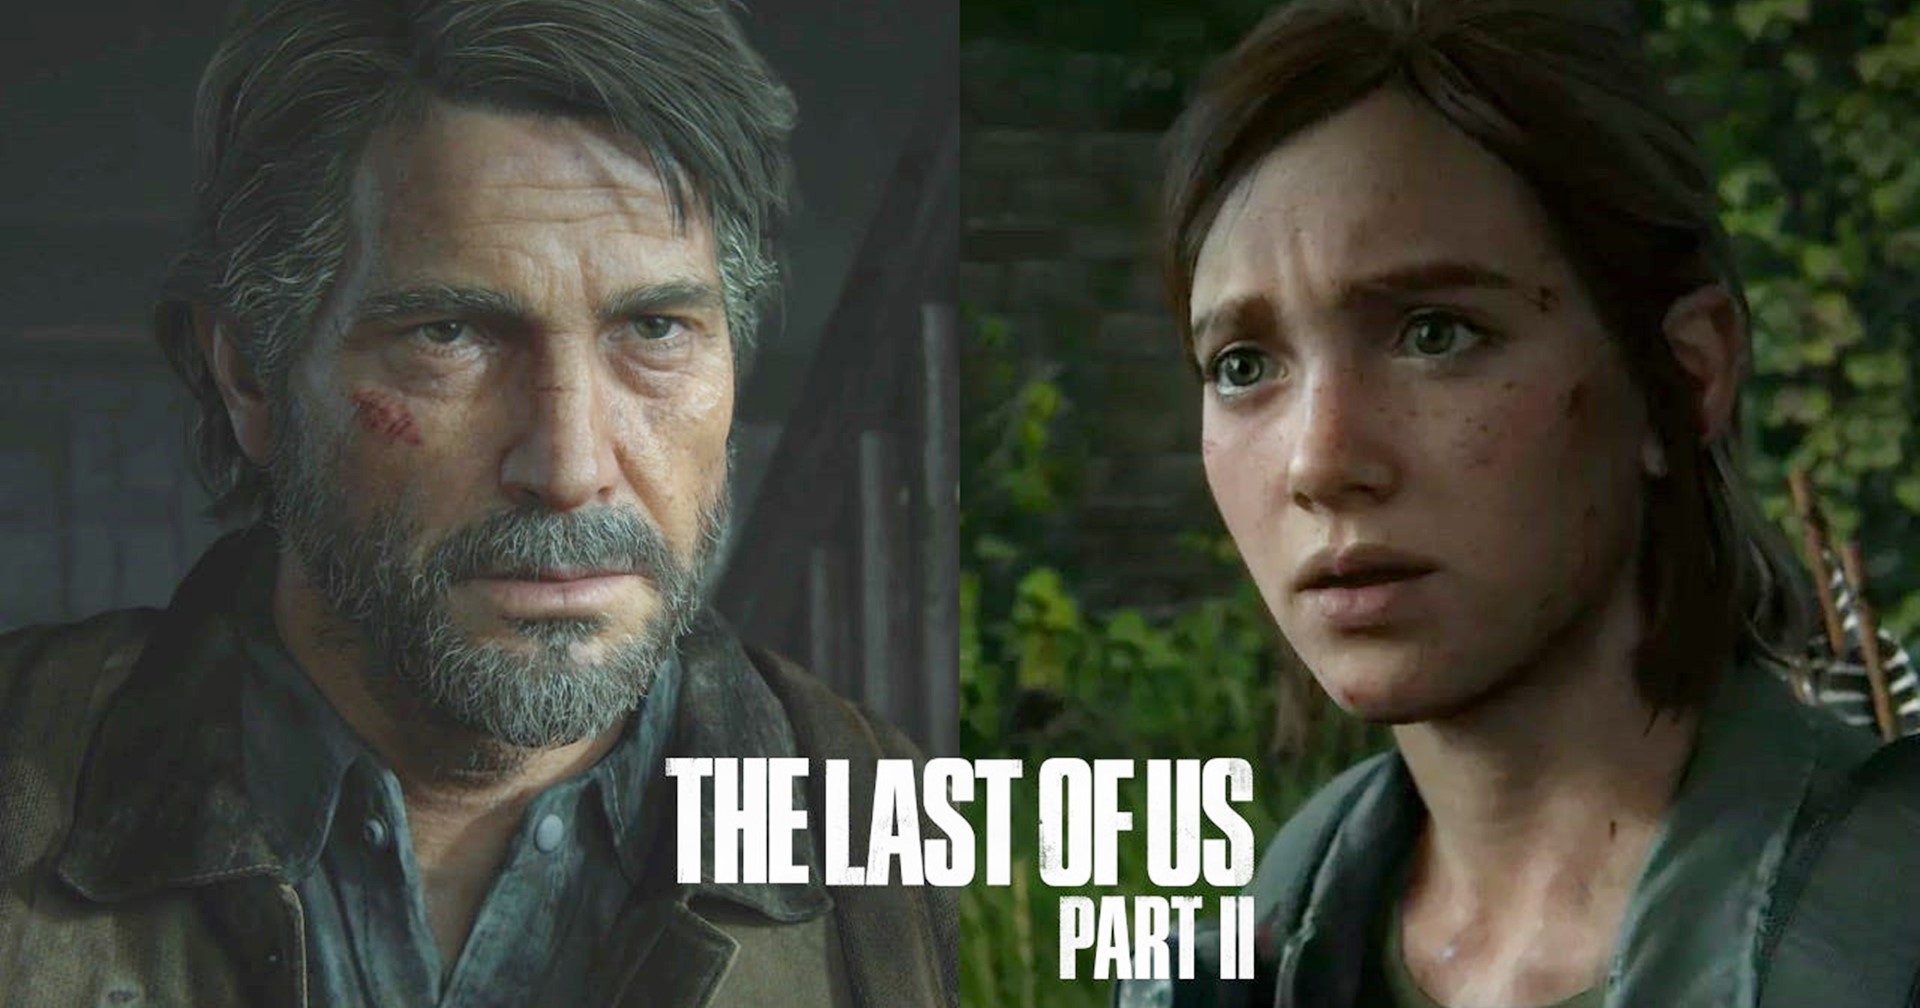 ซีรีส์ The Last of Us ซีซัน 2 จะไม่เดินเรื่องตามเกมภาค 2 ทั้งหมด